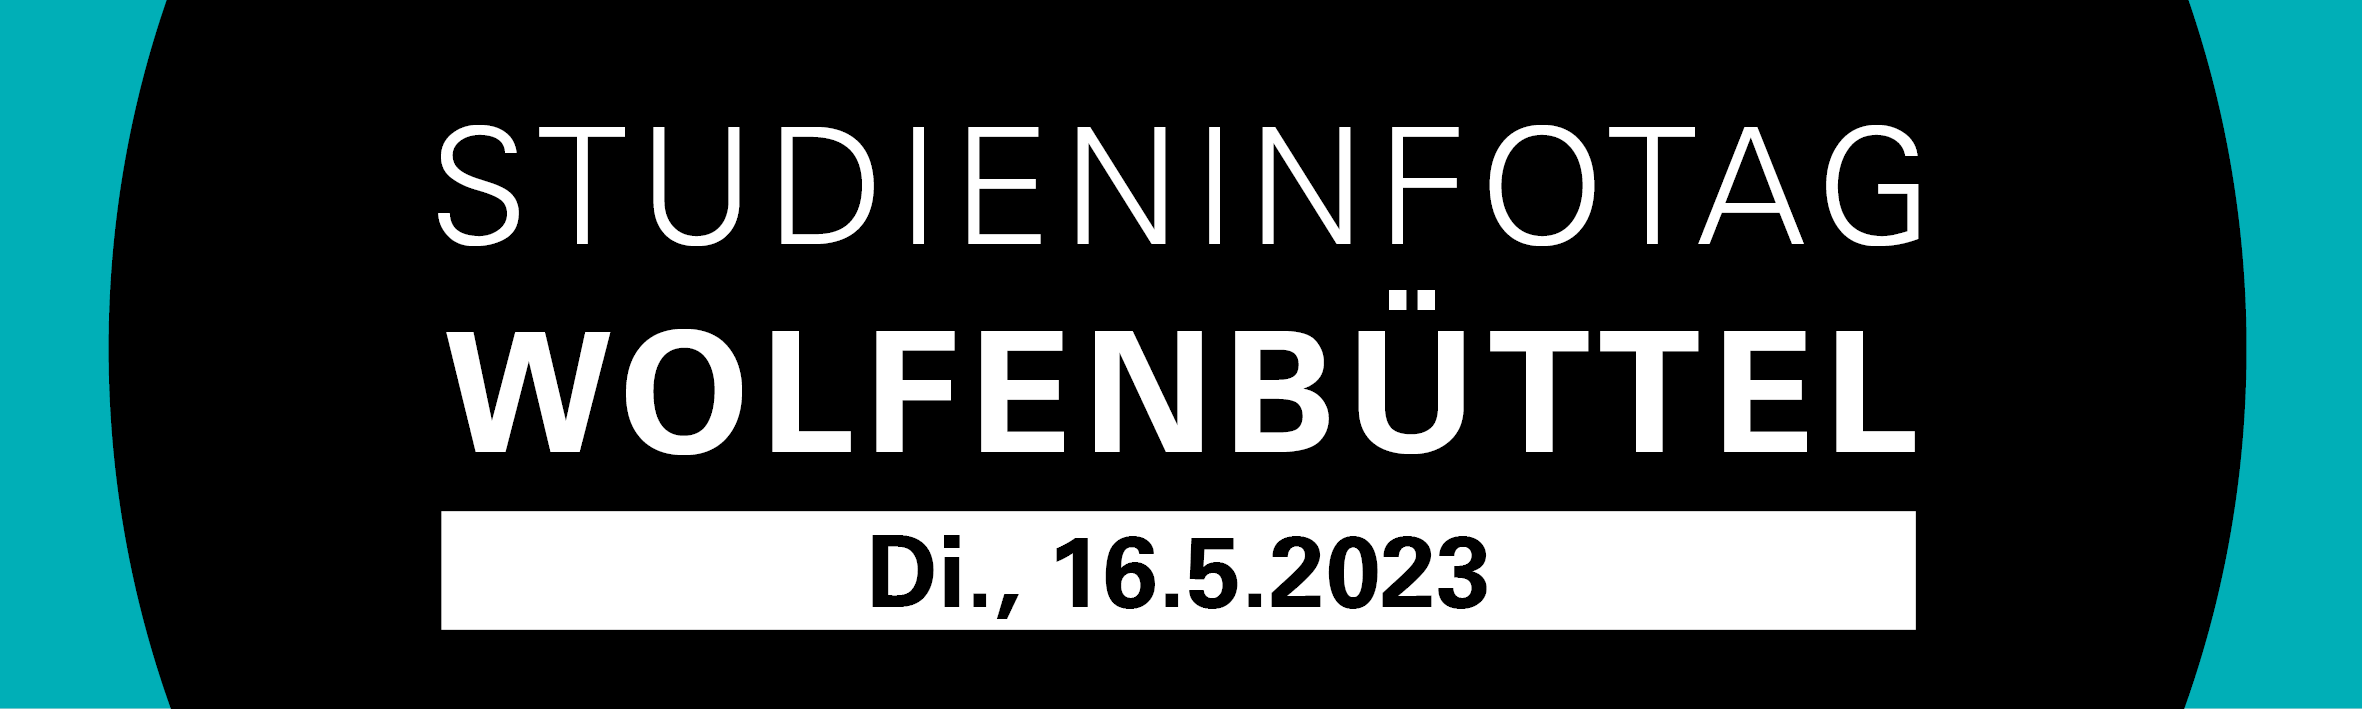 Studieninfotag Wolfenbüttel 2023